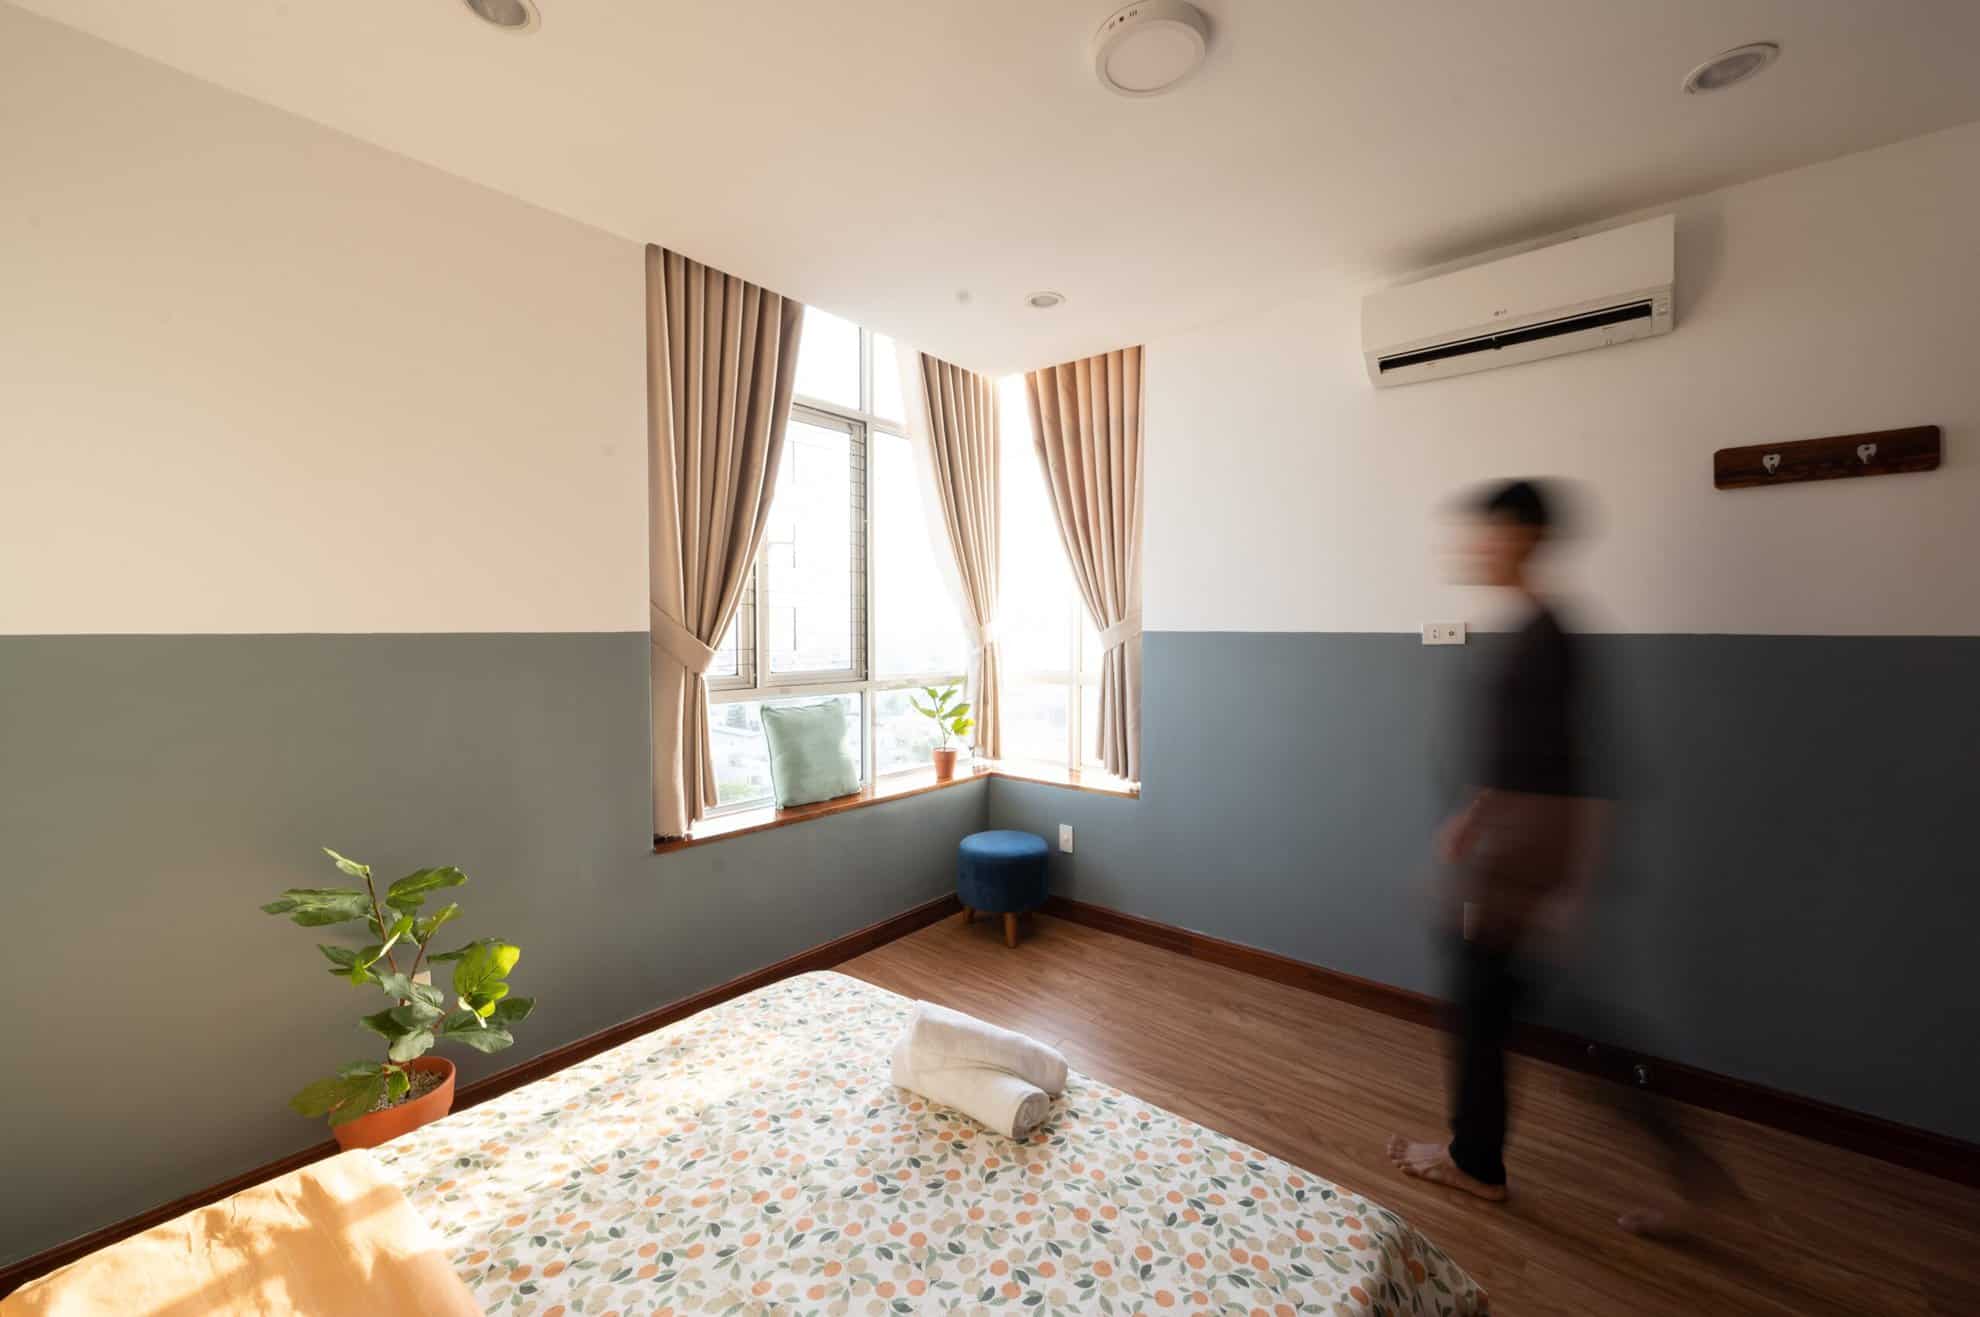 [3/2022] Dự án cải tạo căn hộ cho thuê du lịch tại Quy Nhơn - Before & After 37